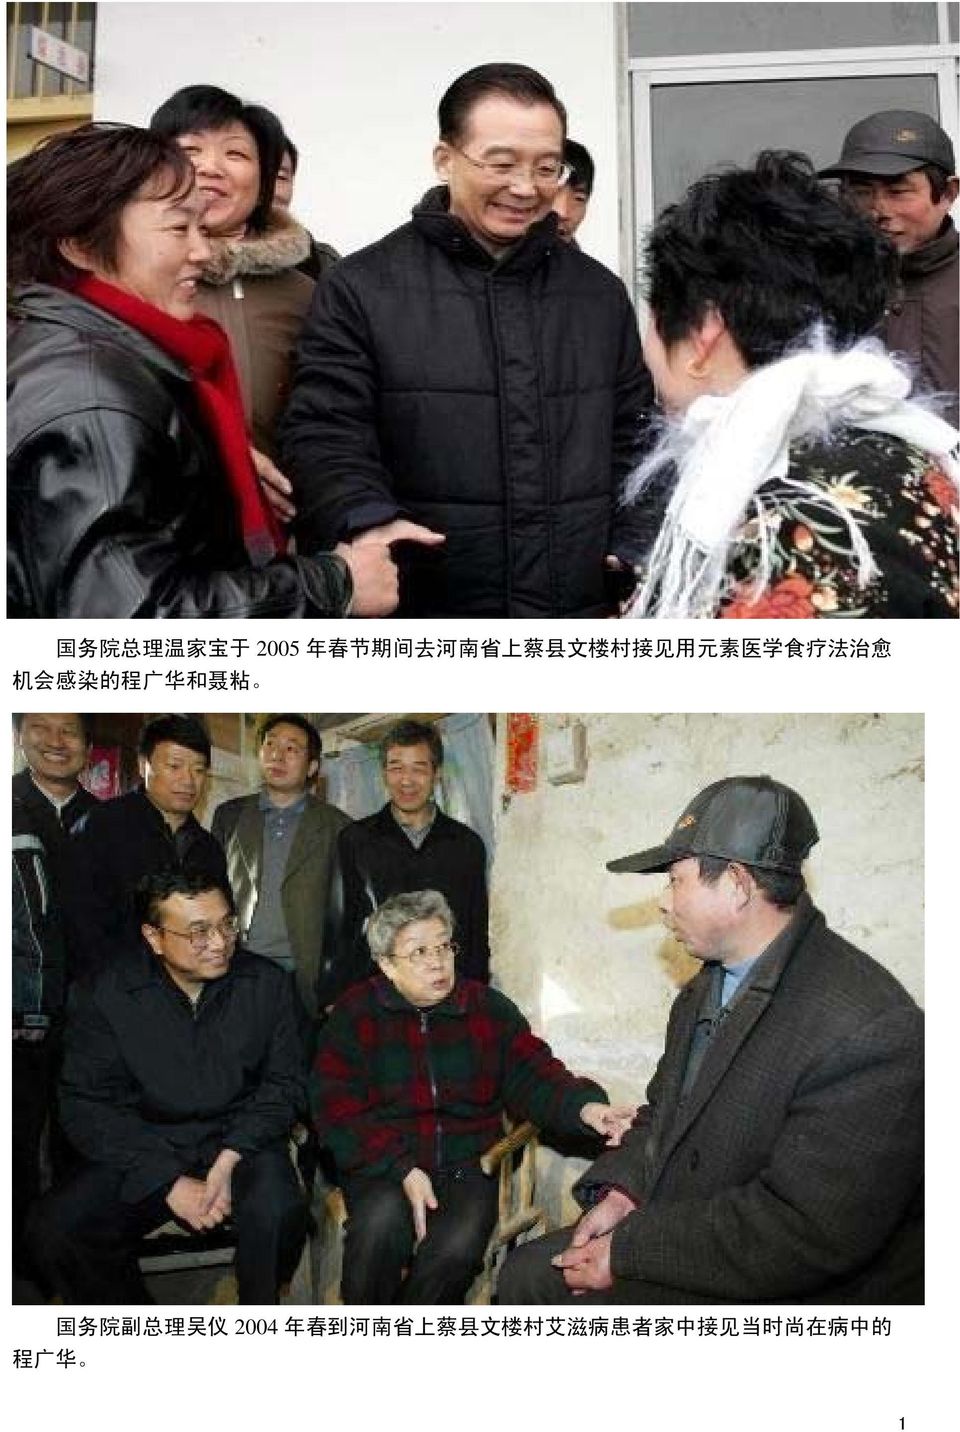 华 和 聂 粘 国 务 院 副 总 理 吴 仪 2004 年 春 到 河 南 省 上 蔡